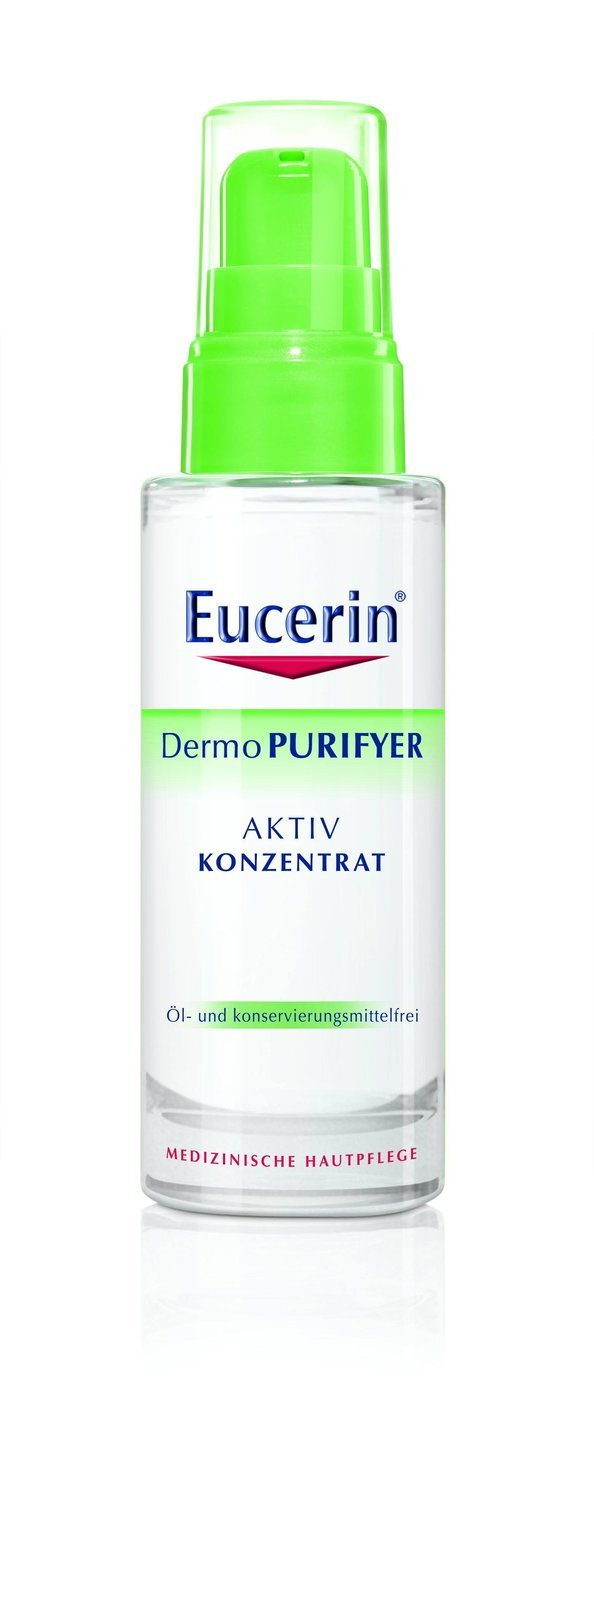 Intenzivní sérum DermoPURIFYER, Eucerin, 40 ml za 375 Kč.